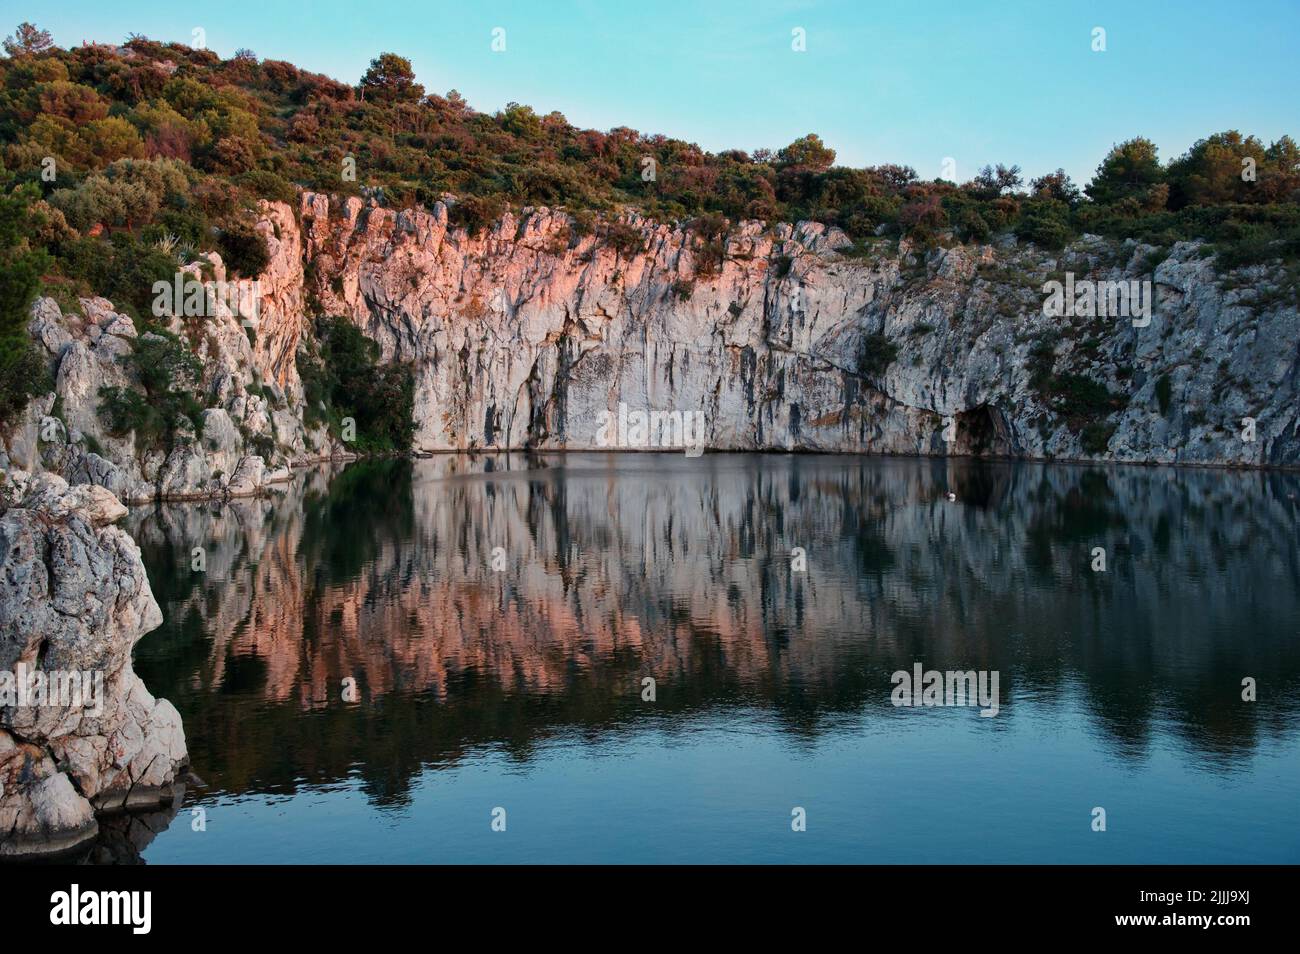 La formazione rocciosa si riflette nell'acqua del lago Foto Stock